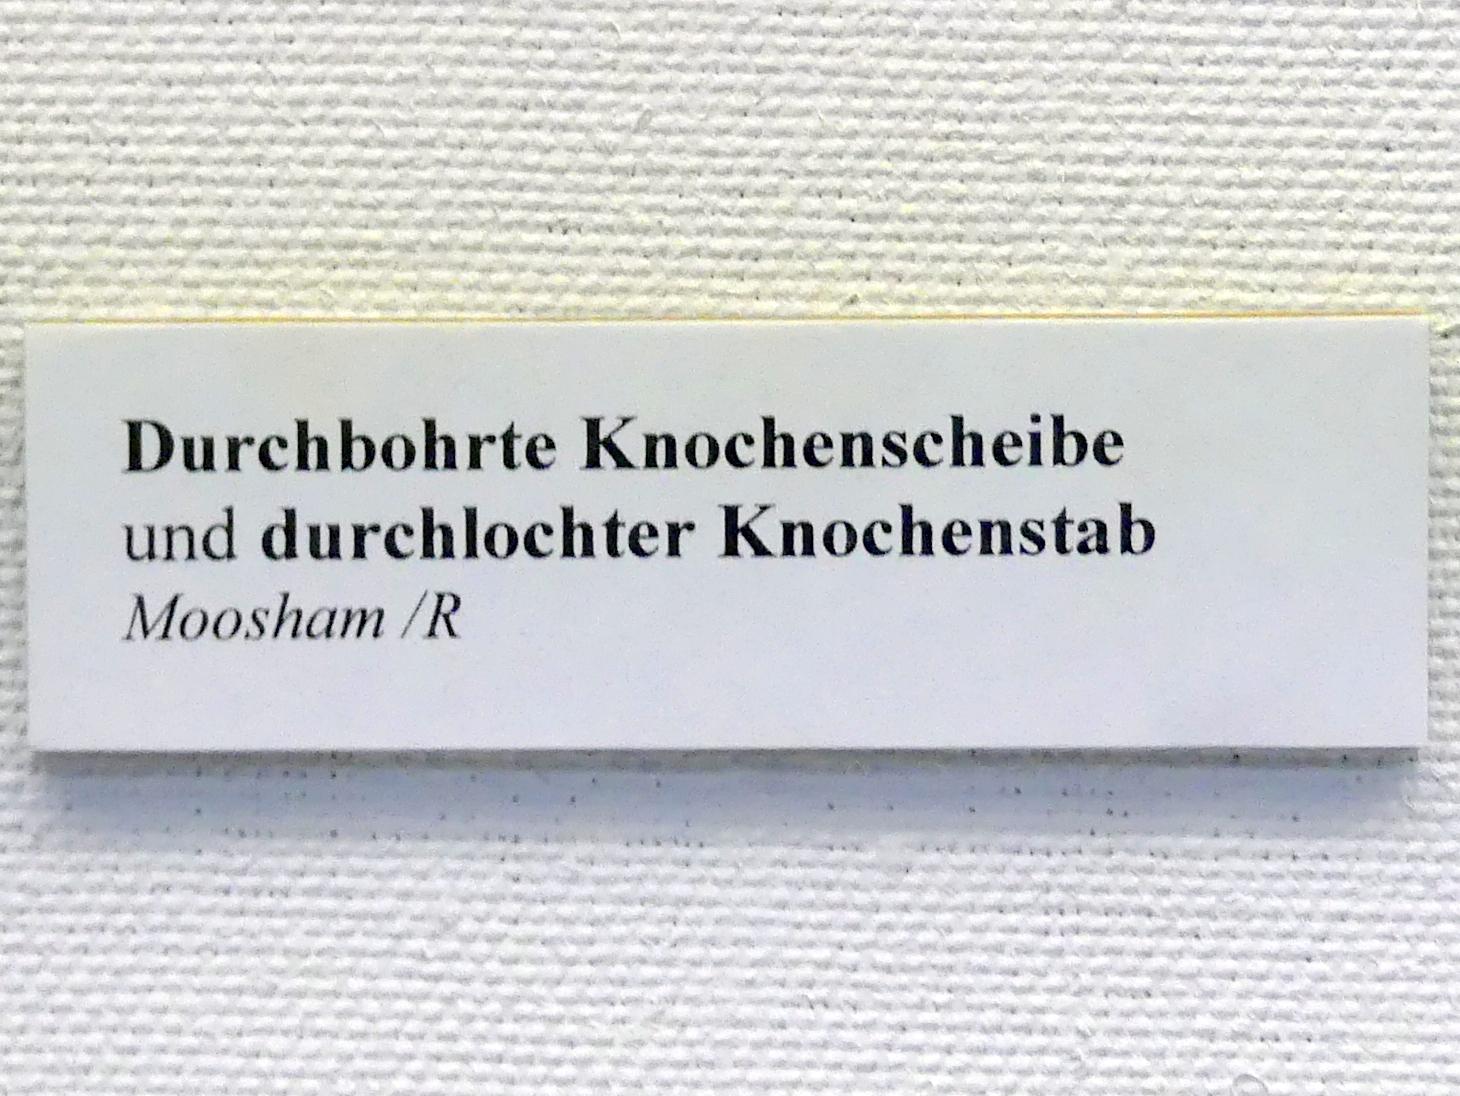 Durchlochter Knochenstab, Endneolithikum, 2800 - 1700 v. Chr., Bild 2/2